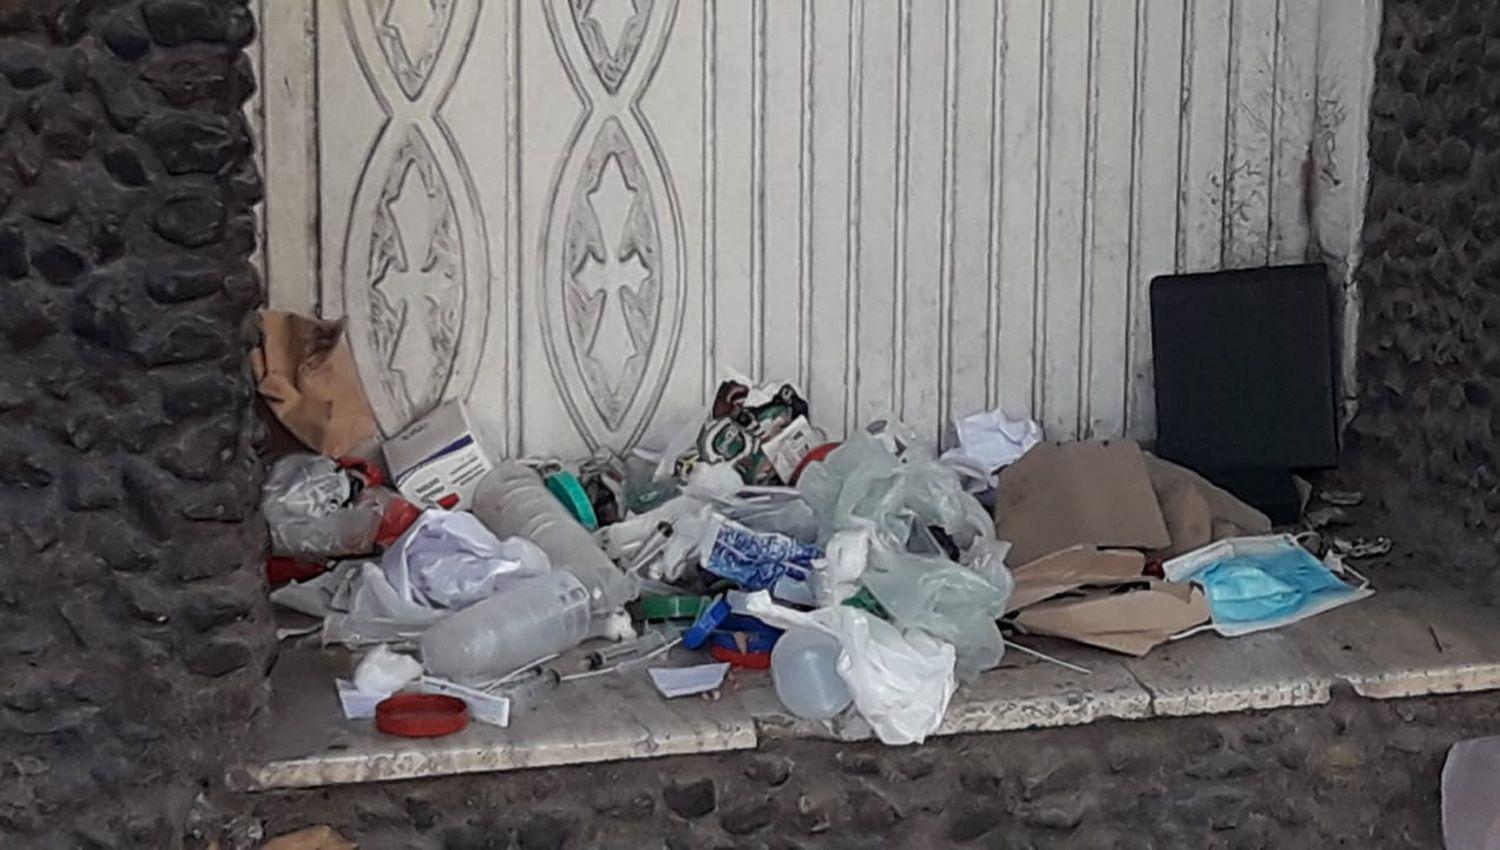 VIDEO  Hallaron residuos patoloacutegicos de test de Covid-19 en la puerta de una casa y sanitizan el lugar